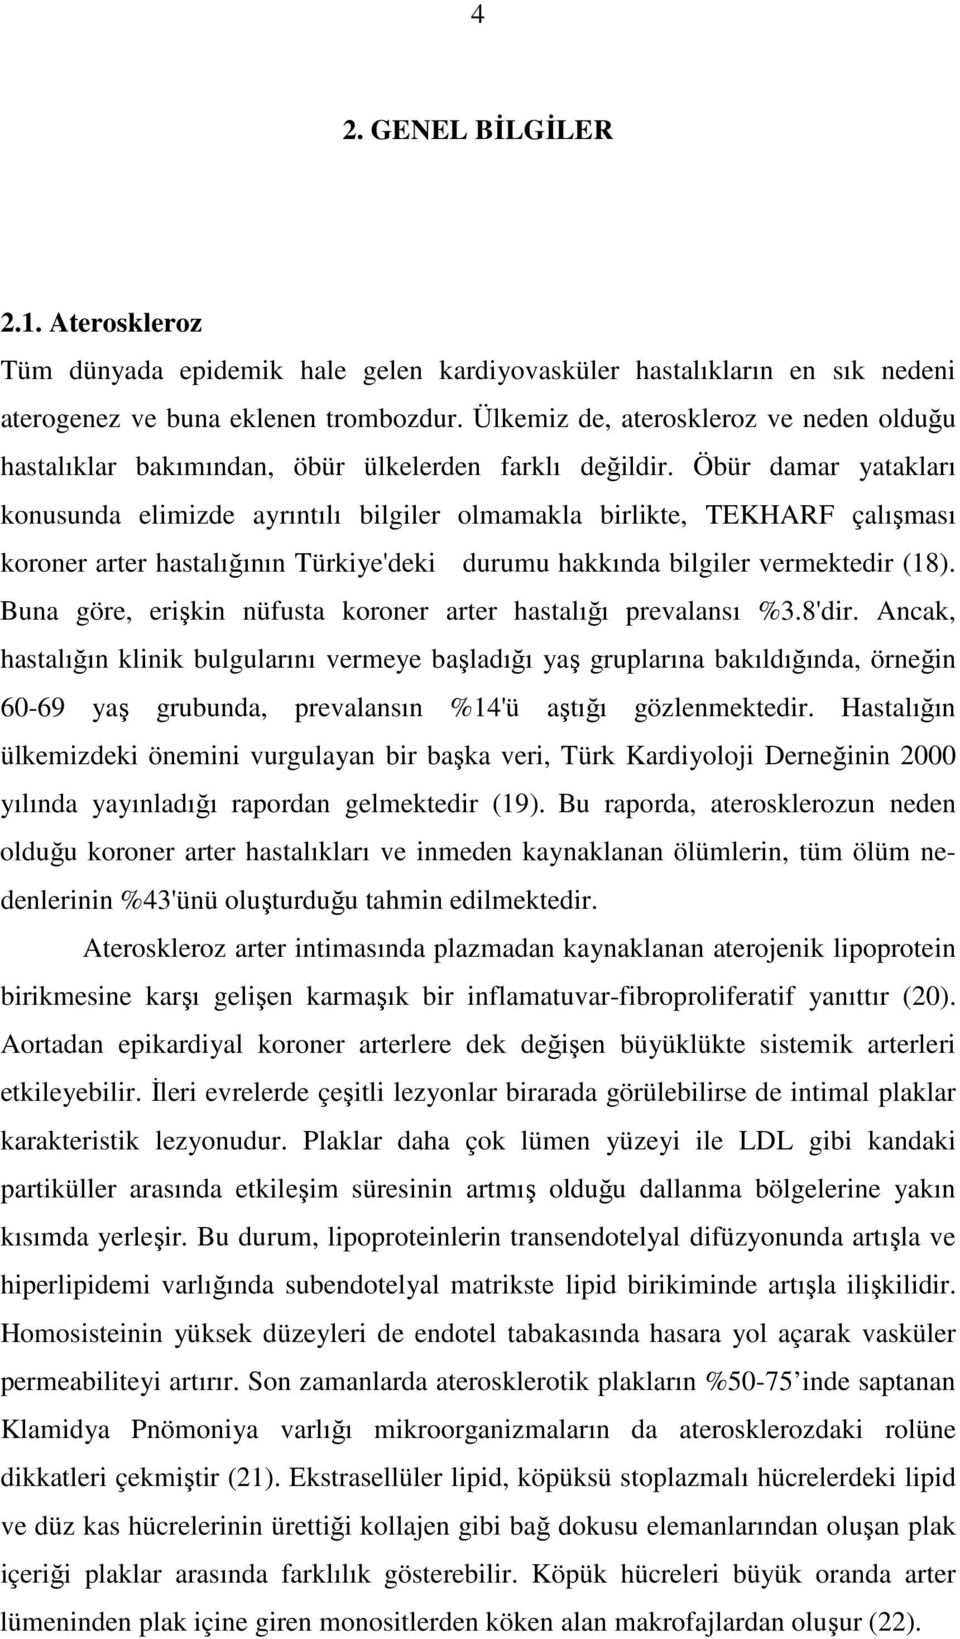 Öbür damar yatakları konusunda elimizde ayrıntılı bilgiler olmamakla birlikte, TEKHARF çalışması koroner arter hastalığının Türkiye'deki durumu hakkında bilgiler vermektedir (18).